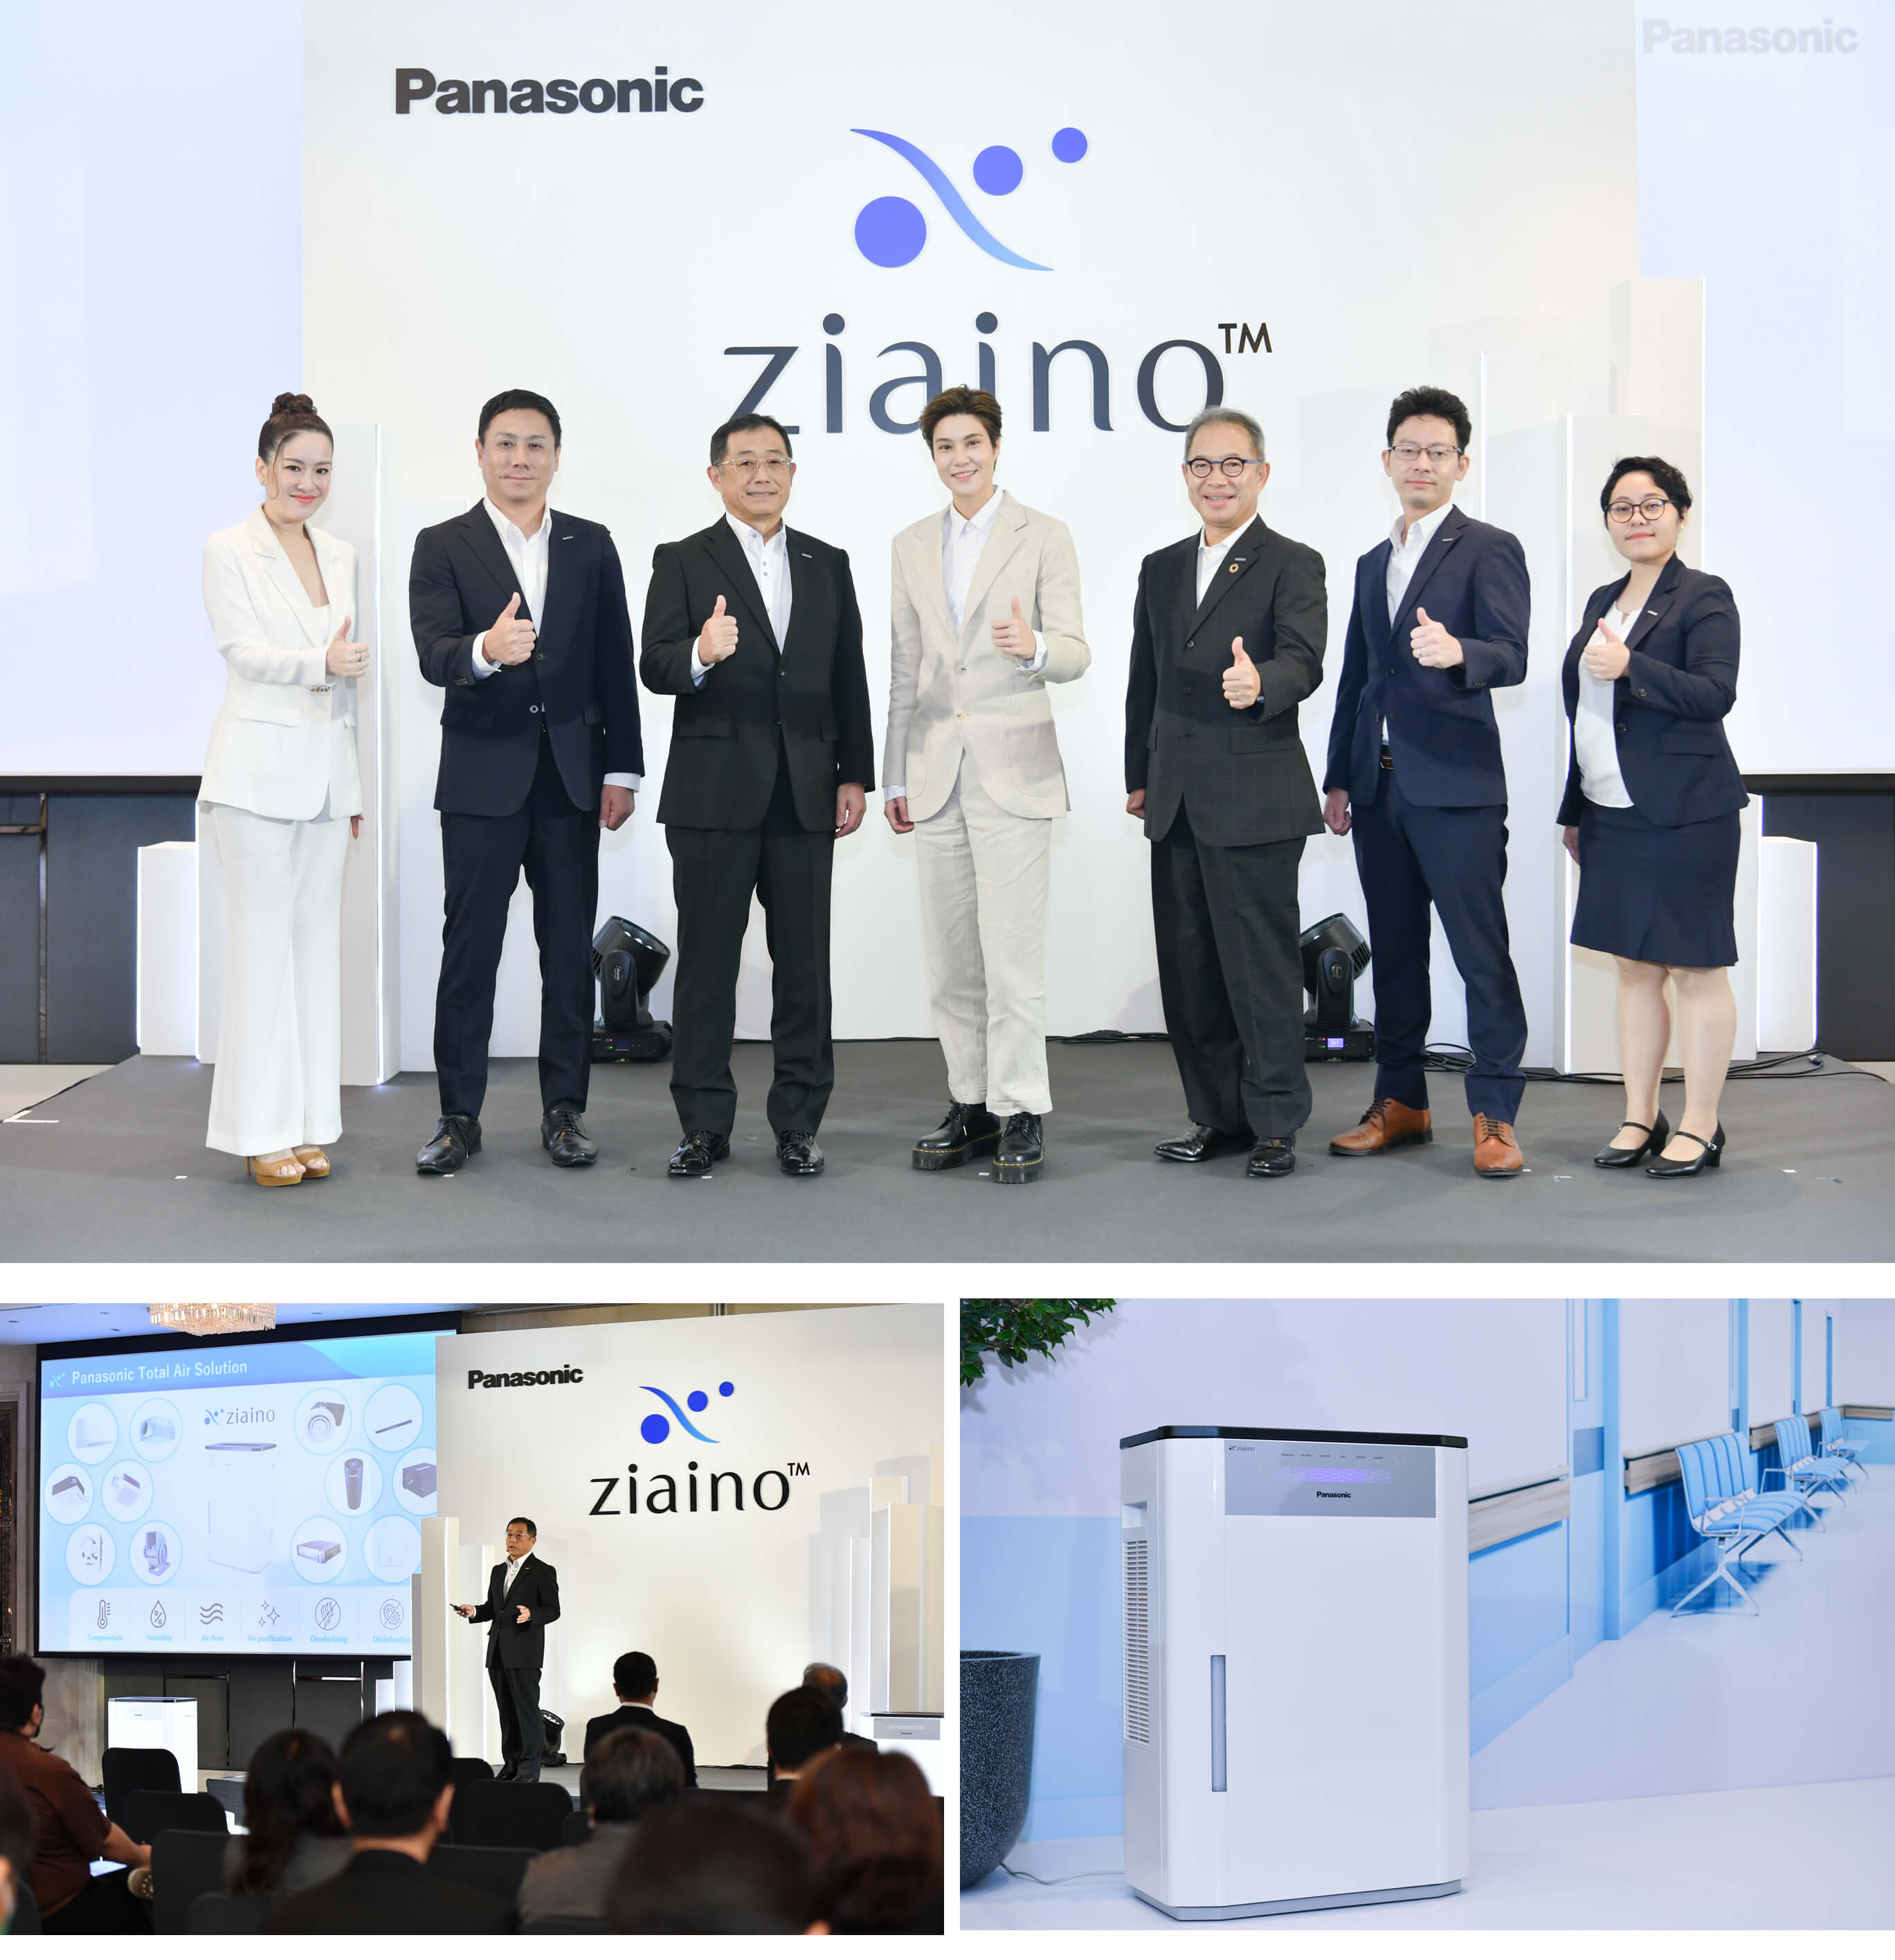 “พานาโซนิค” เปิดตัว Panasonic ziaino™ เครื่องยับยั้งเชื้อโรคในอากาศ ด้วยเทคโนโลยีใหม่ล่าสุด